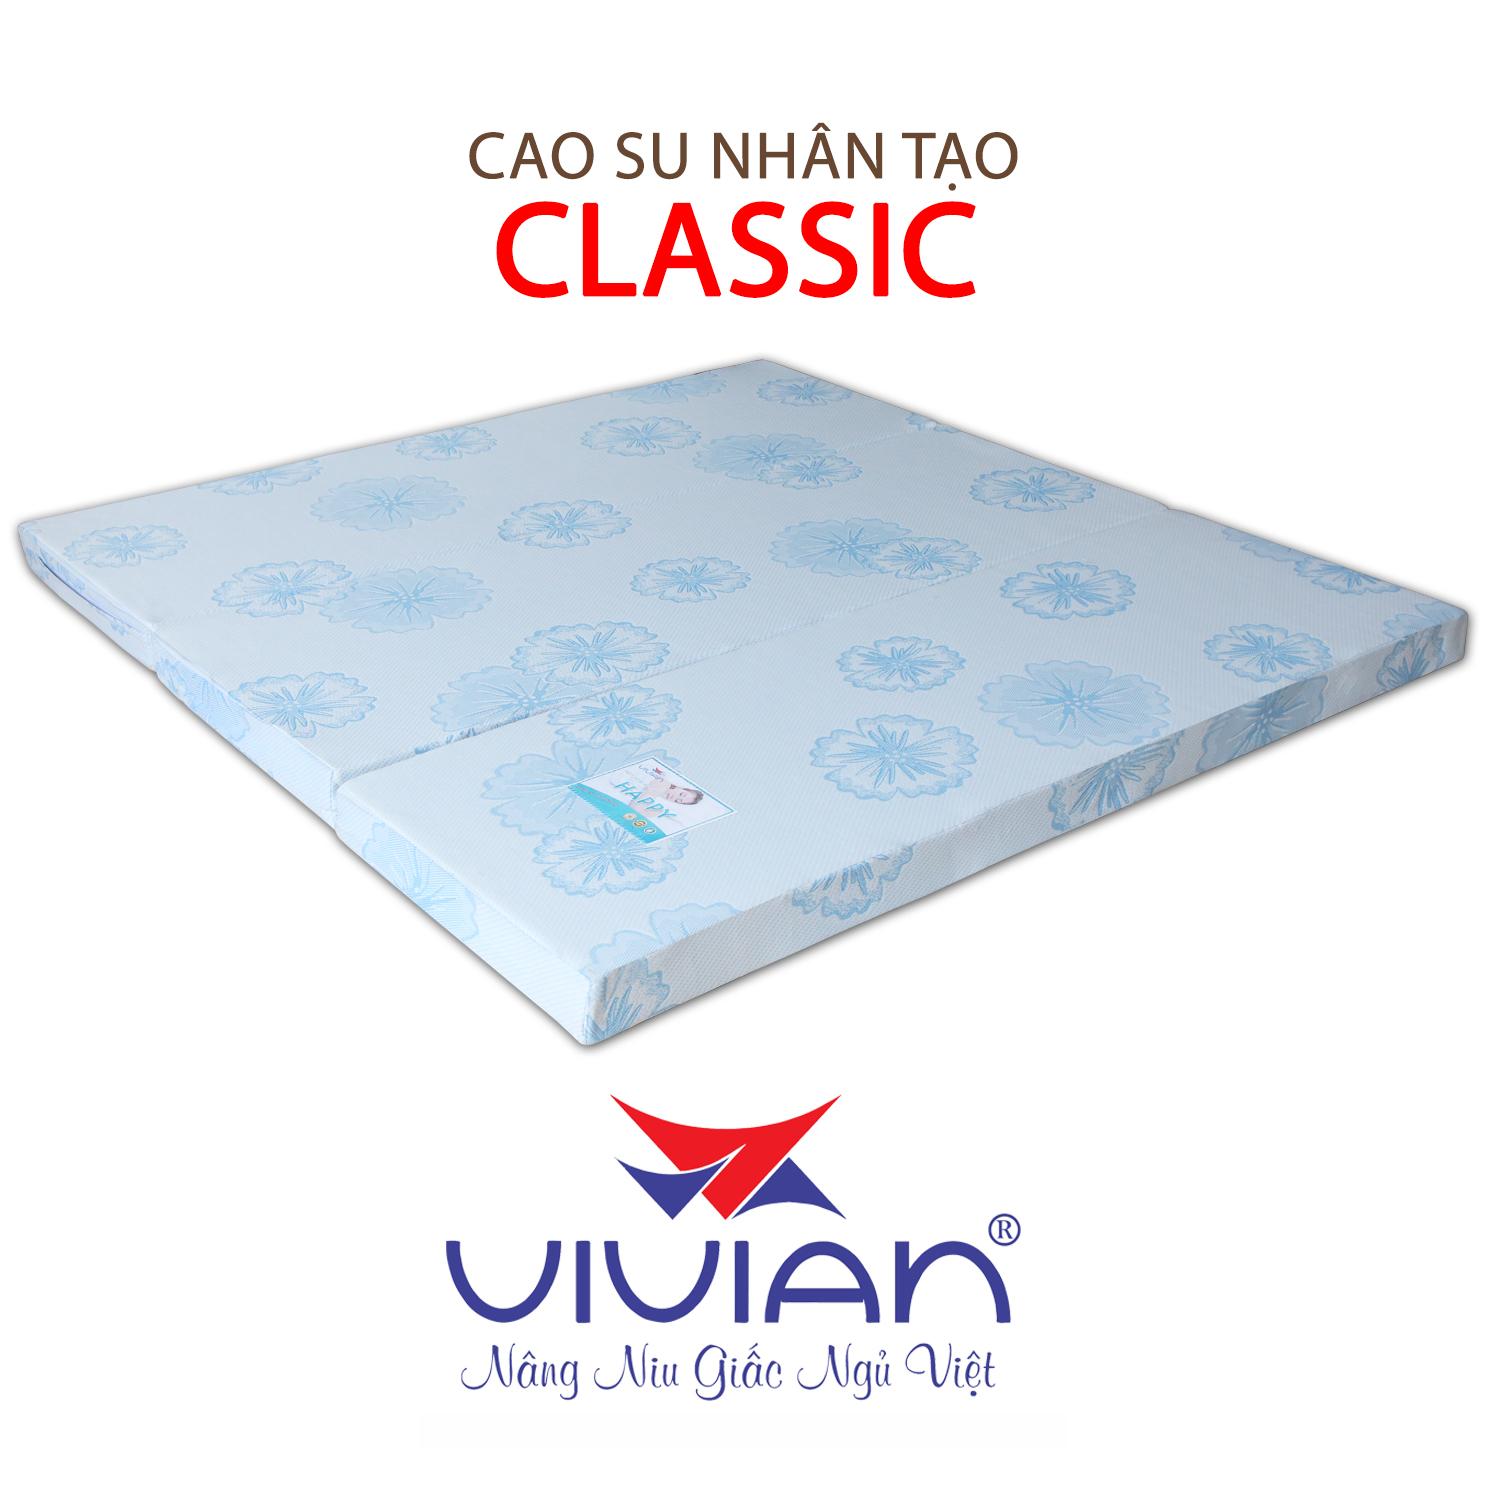 NỆM CAO SU NHÂN TẠO CLASSIC GẤP 3 VIVIAN 100X200X20